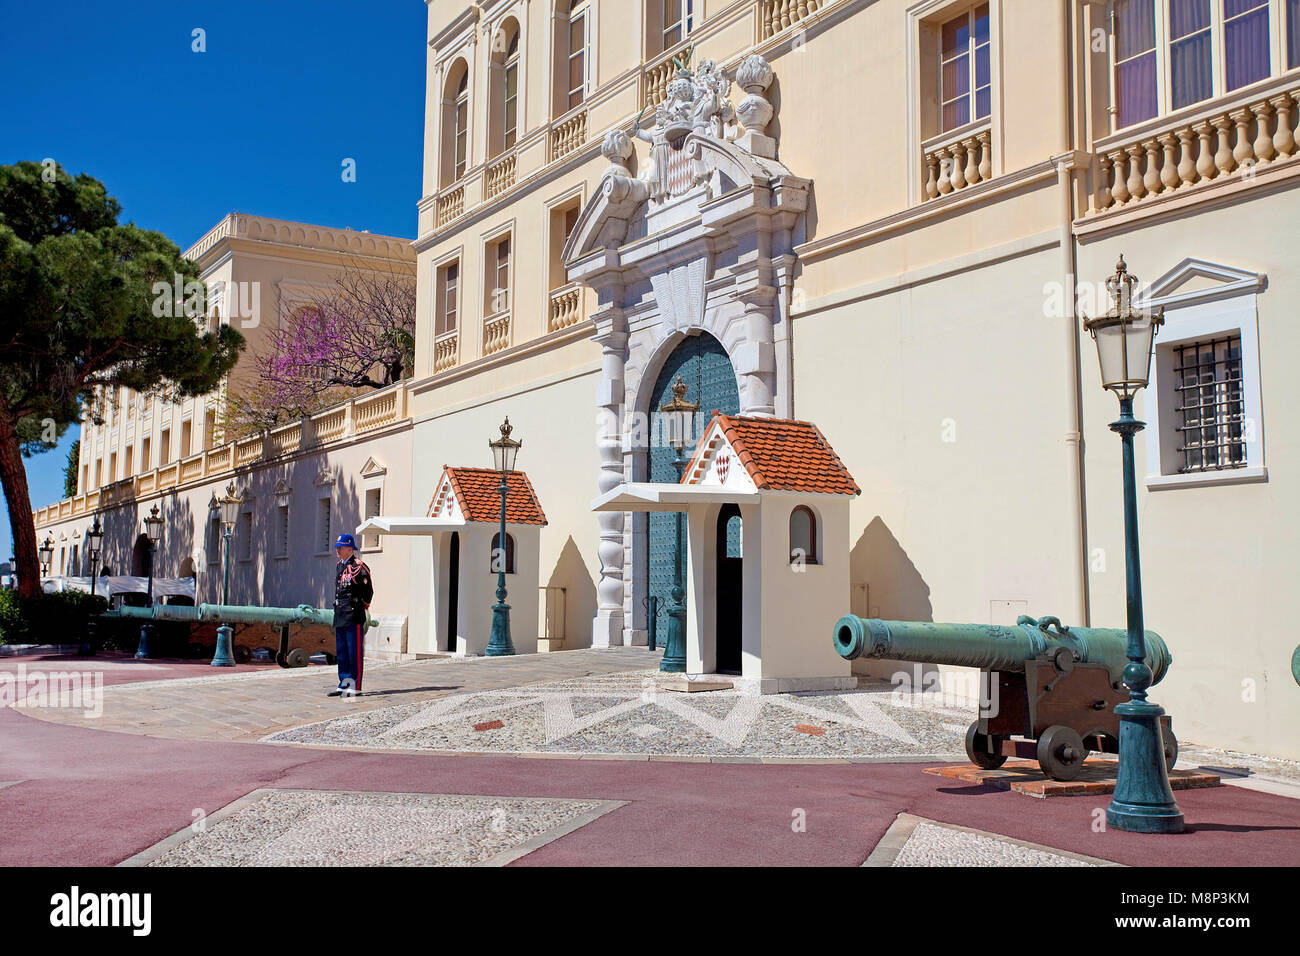 Palace guardia al Palais Princier, Princes Palace di Monaco, residenza ufficiale del Principe Sovrano di Monaco, Côte d'Azur, costa azzurra Foto Stock